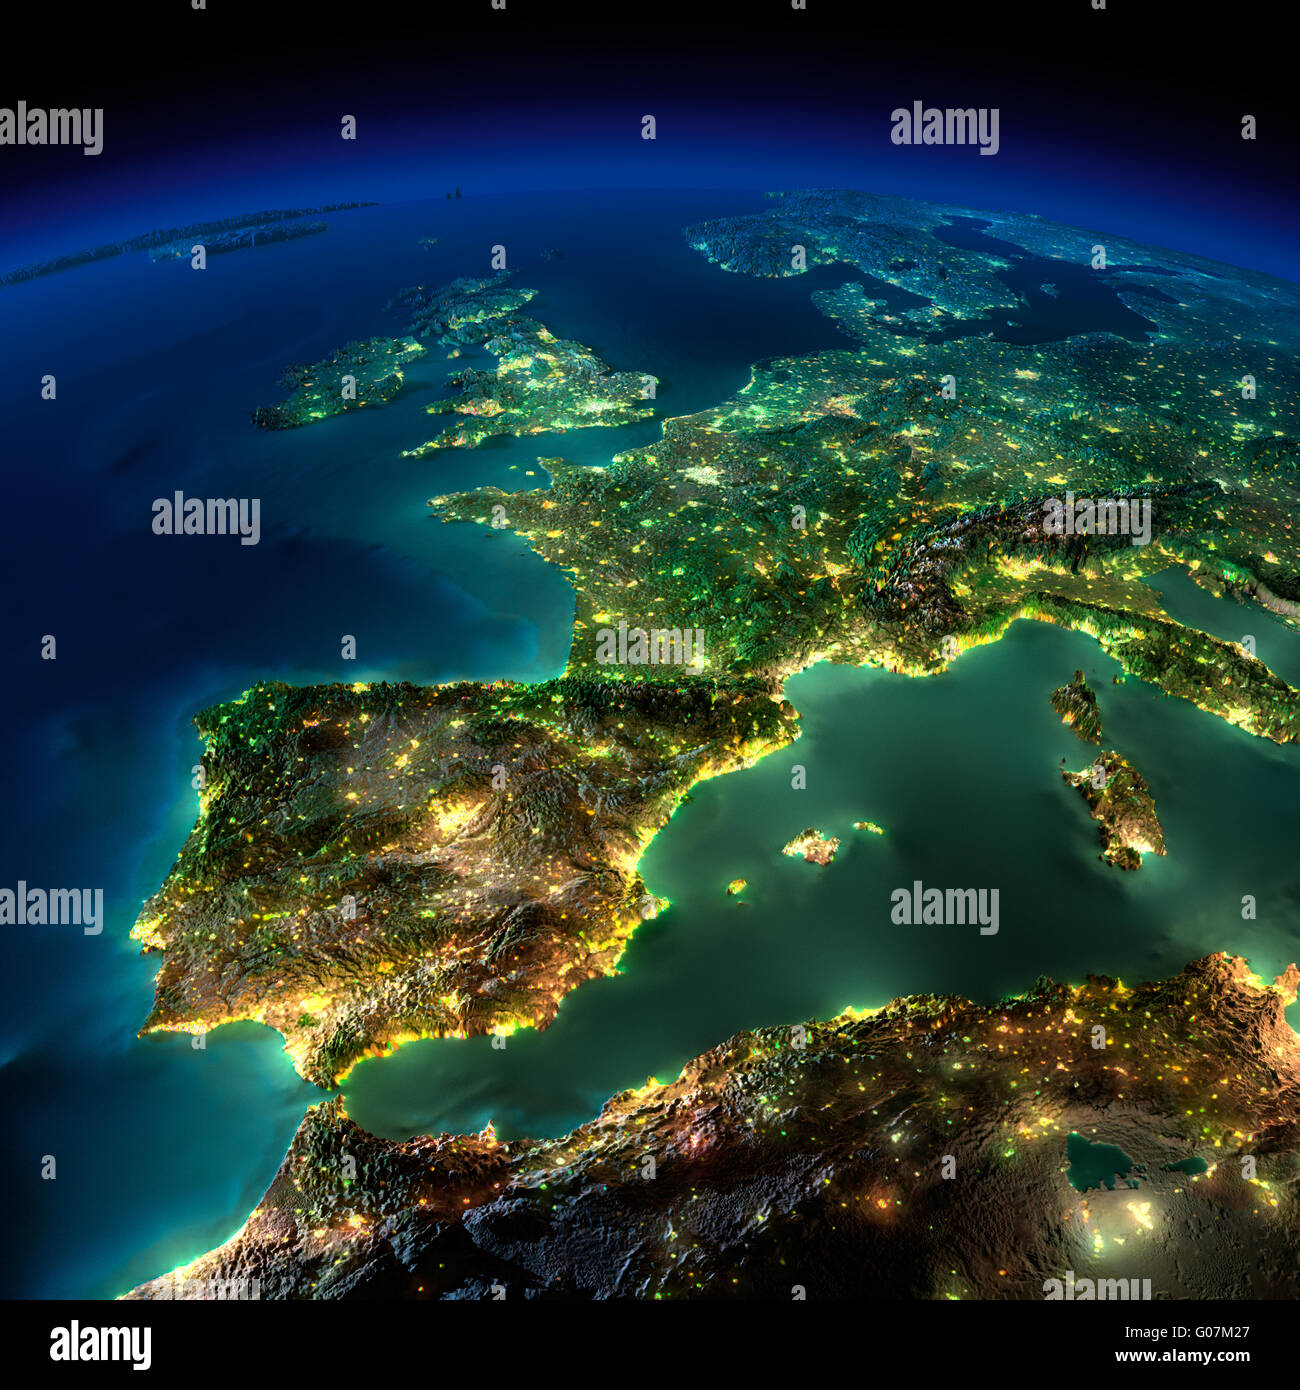 La terre de nuit. Un morceau de l'Europe - Espagne, Portugal, France Banque D'Images